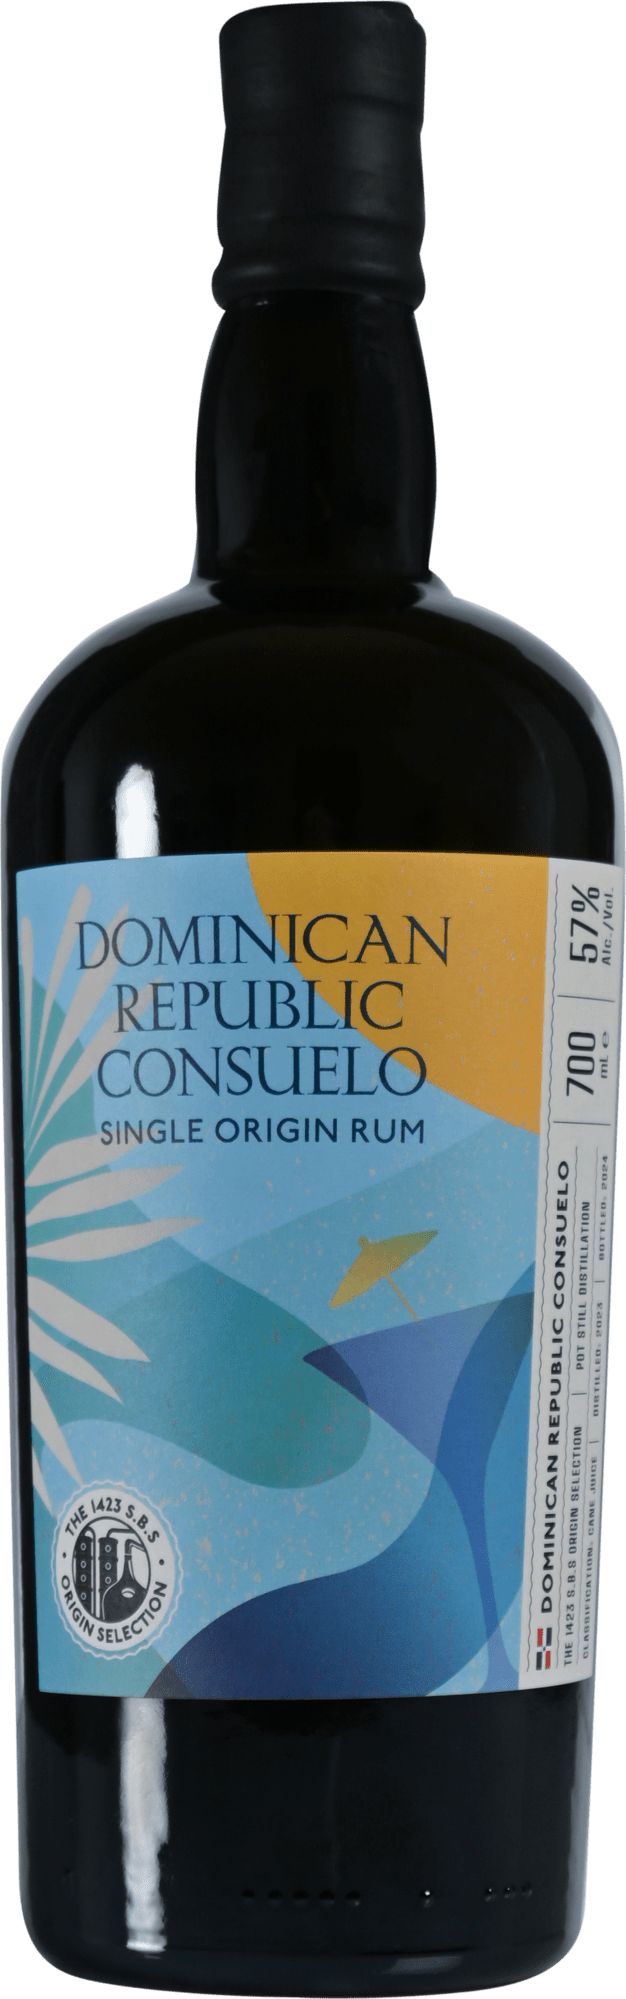 S.B.S Origin Dominican Republic Consuelo